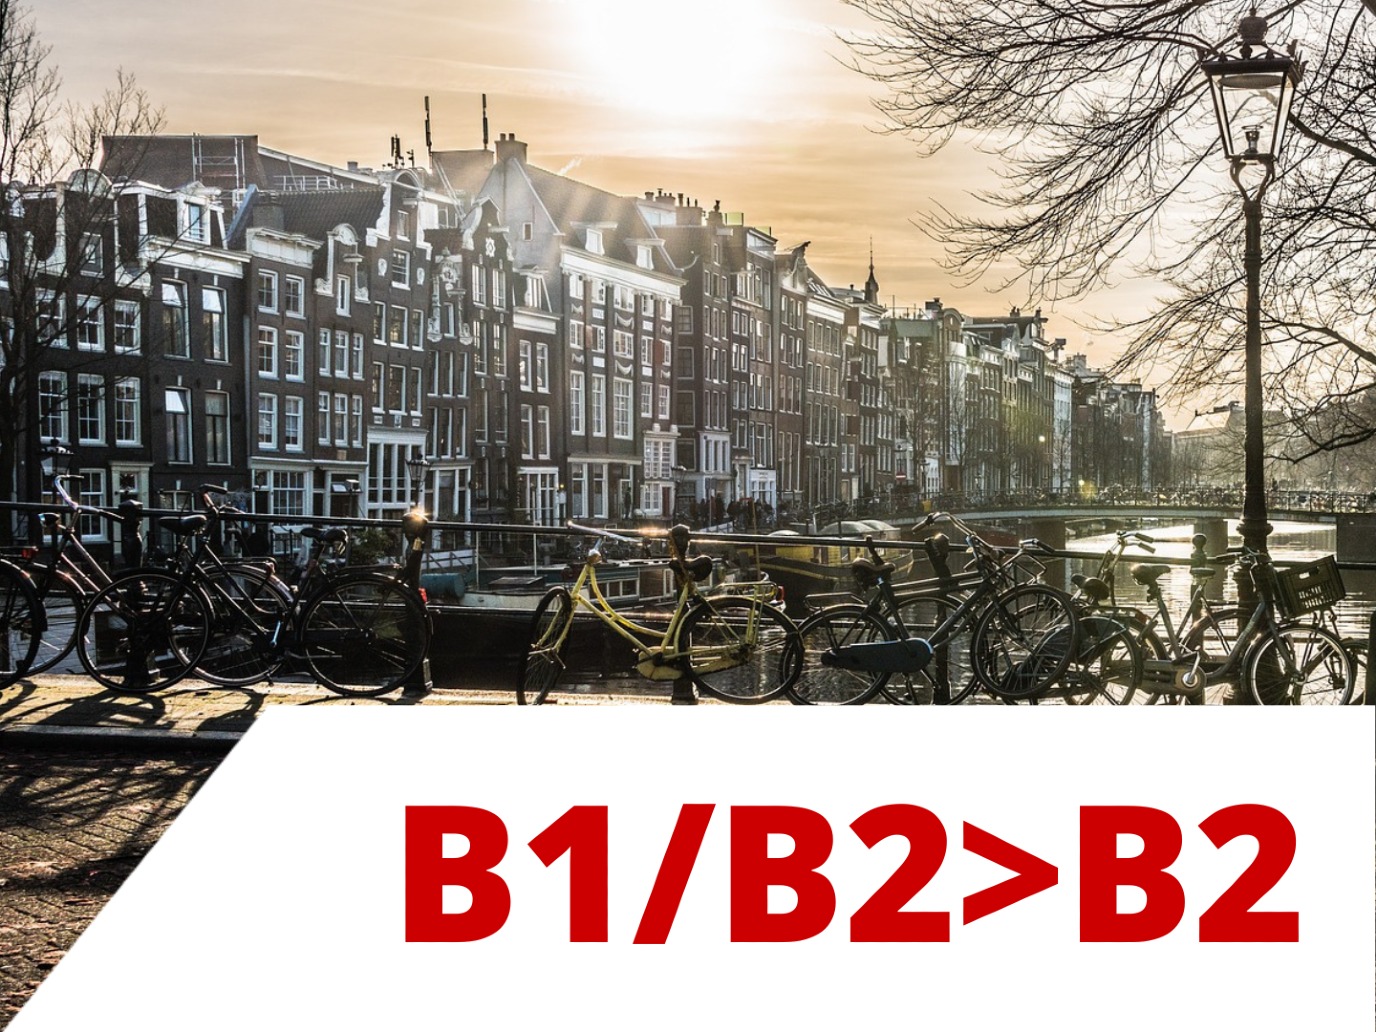 Dutch B1/B2>B2